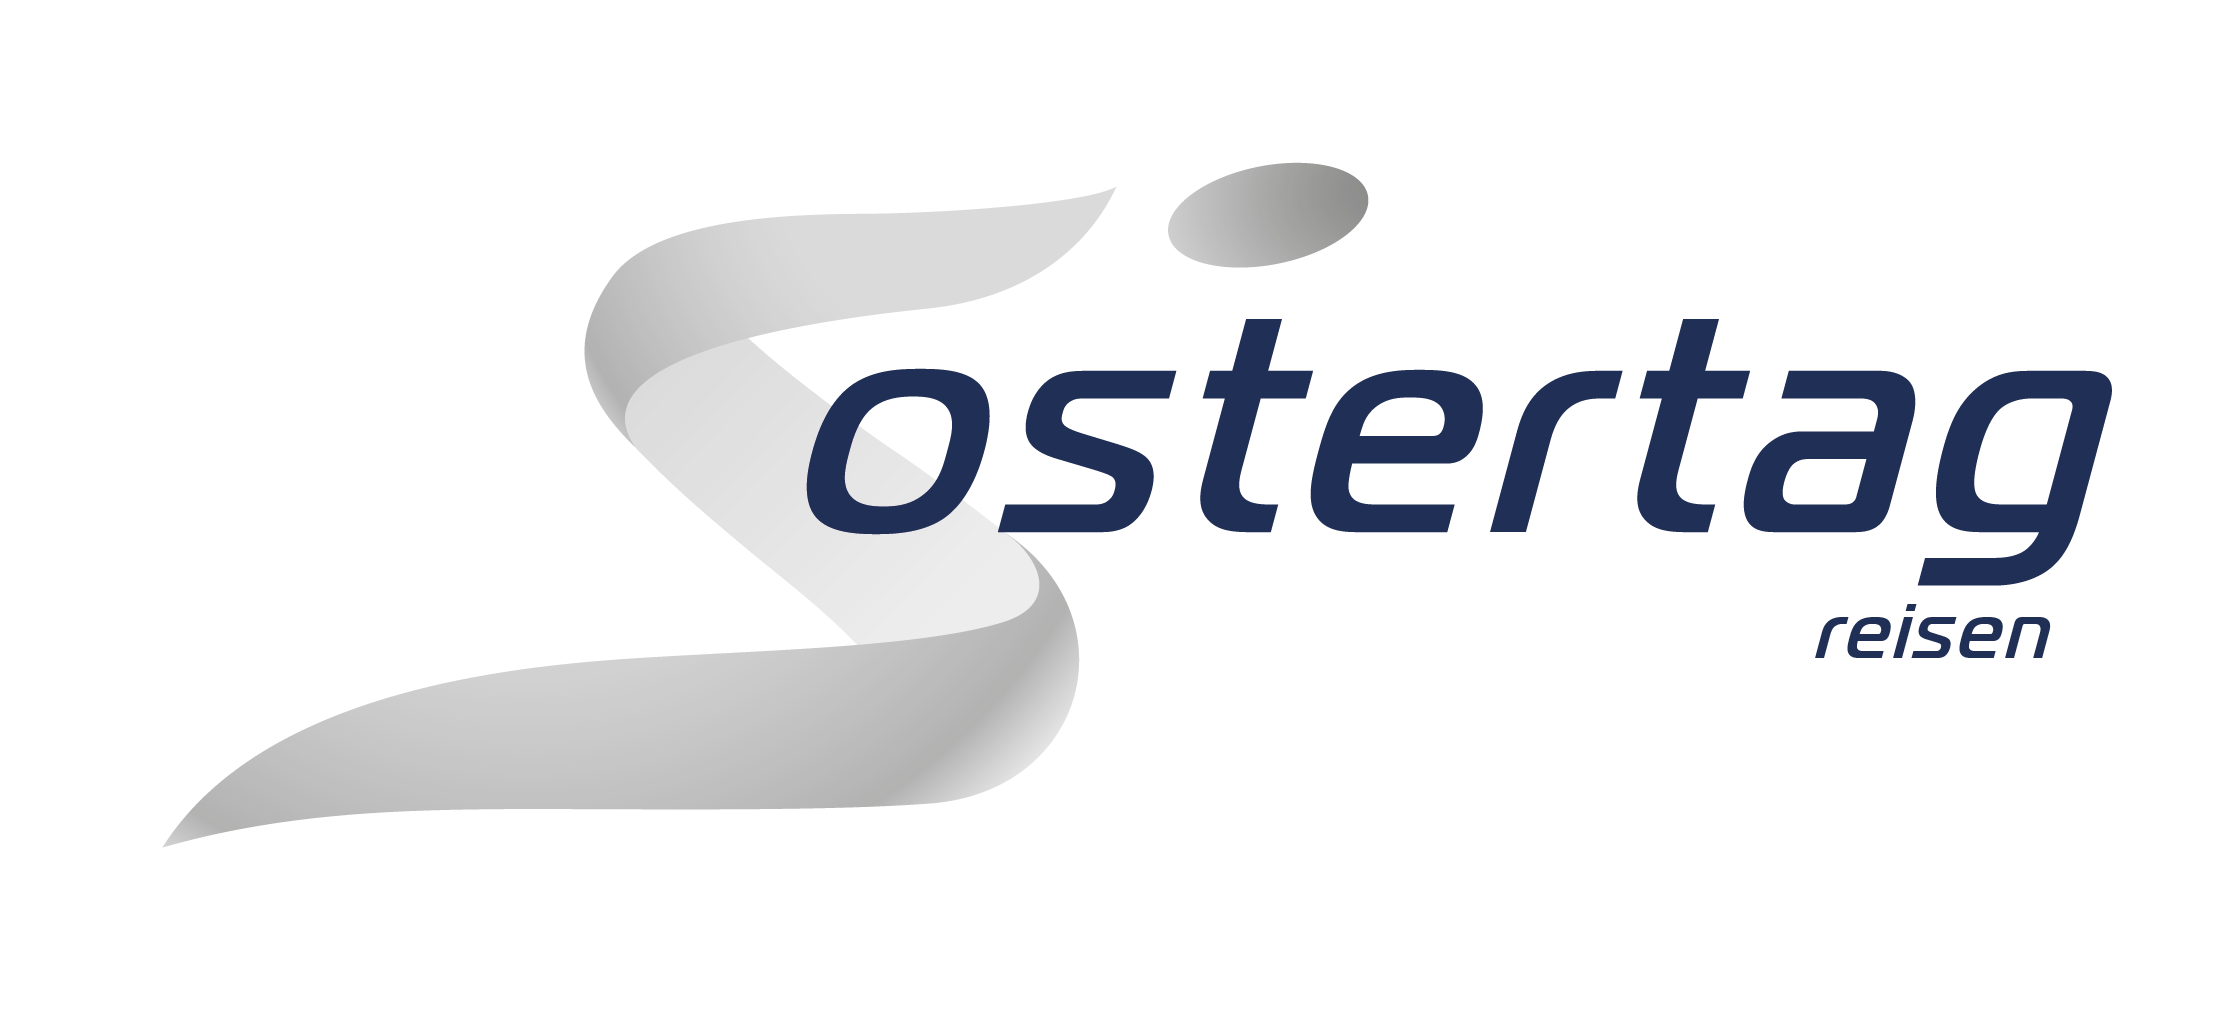 Ostertag Reisen - Logo